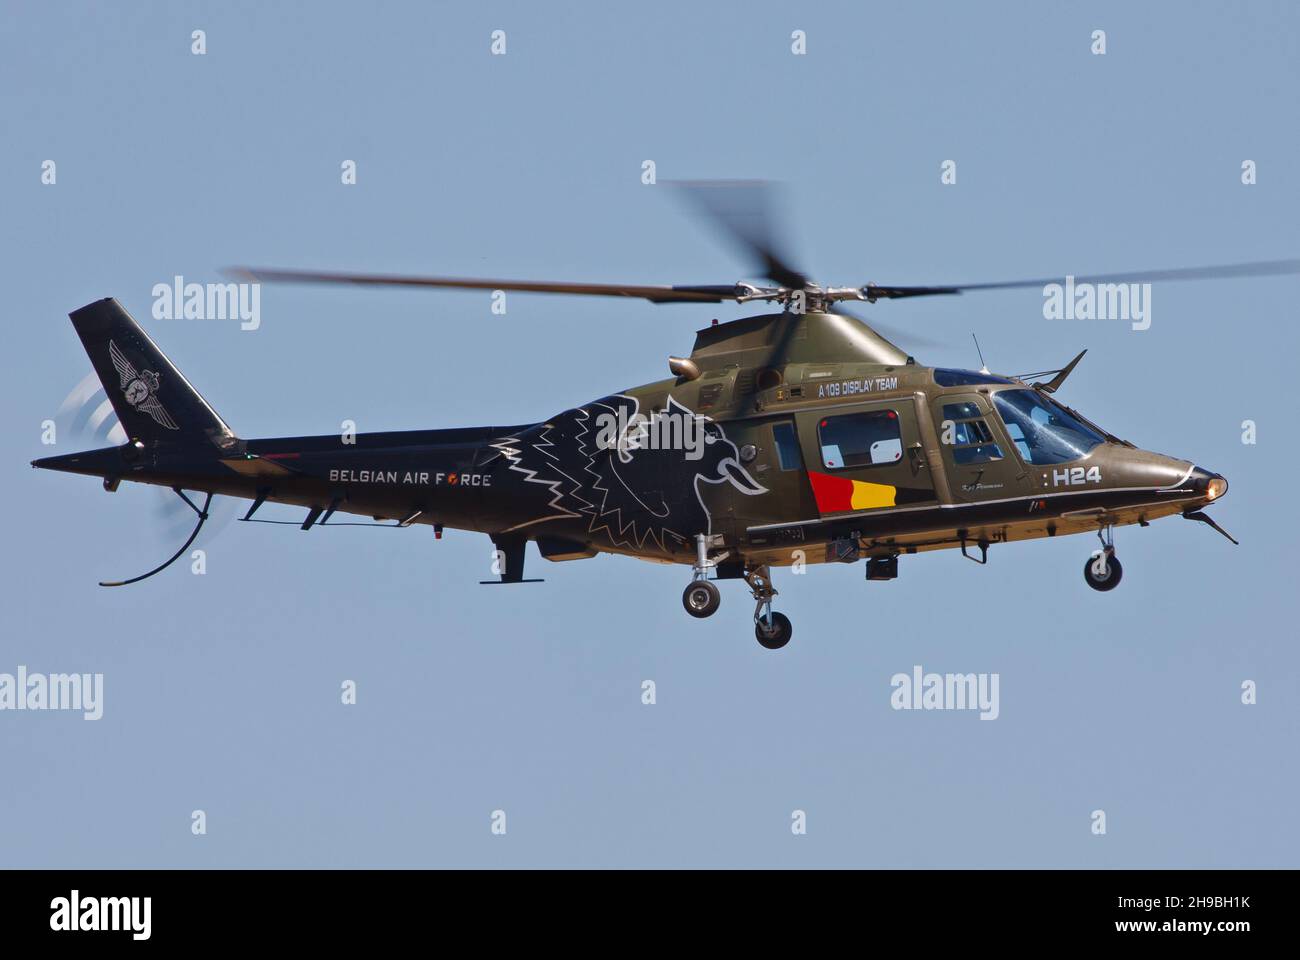 KECSKEMET, HONGRIE - 29 septembre 2013 : hélicoptère de l'armée de l'air belge Agusta A109 dans les airs Banque D'Images